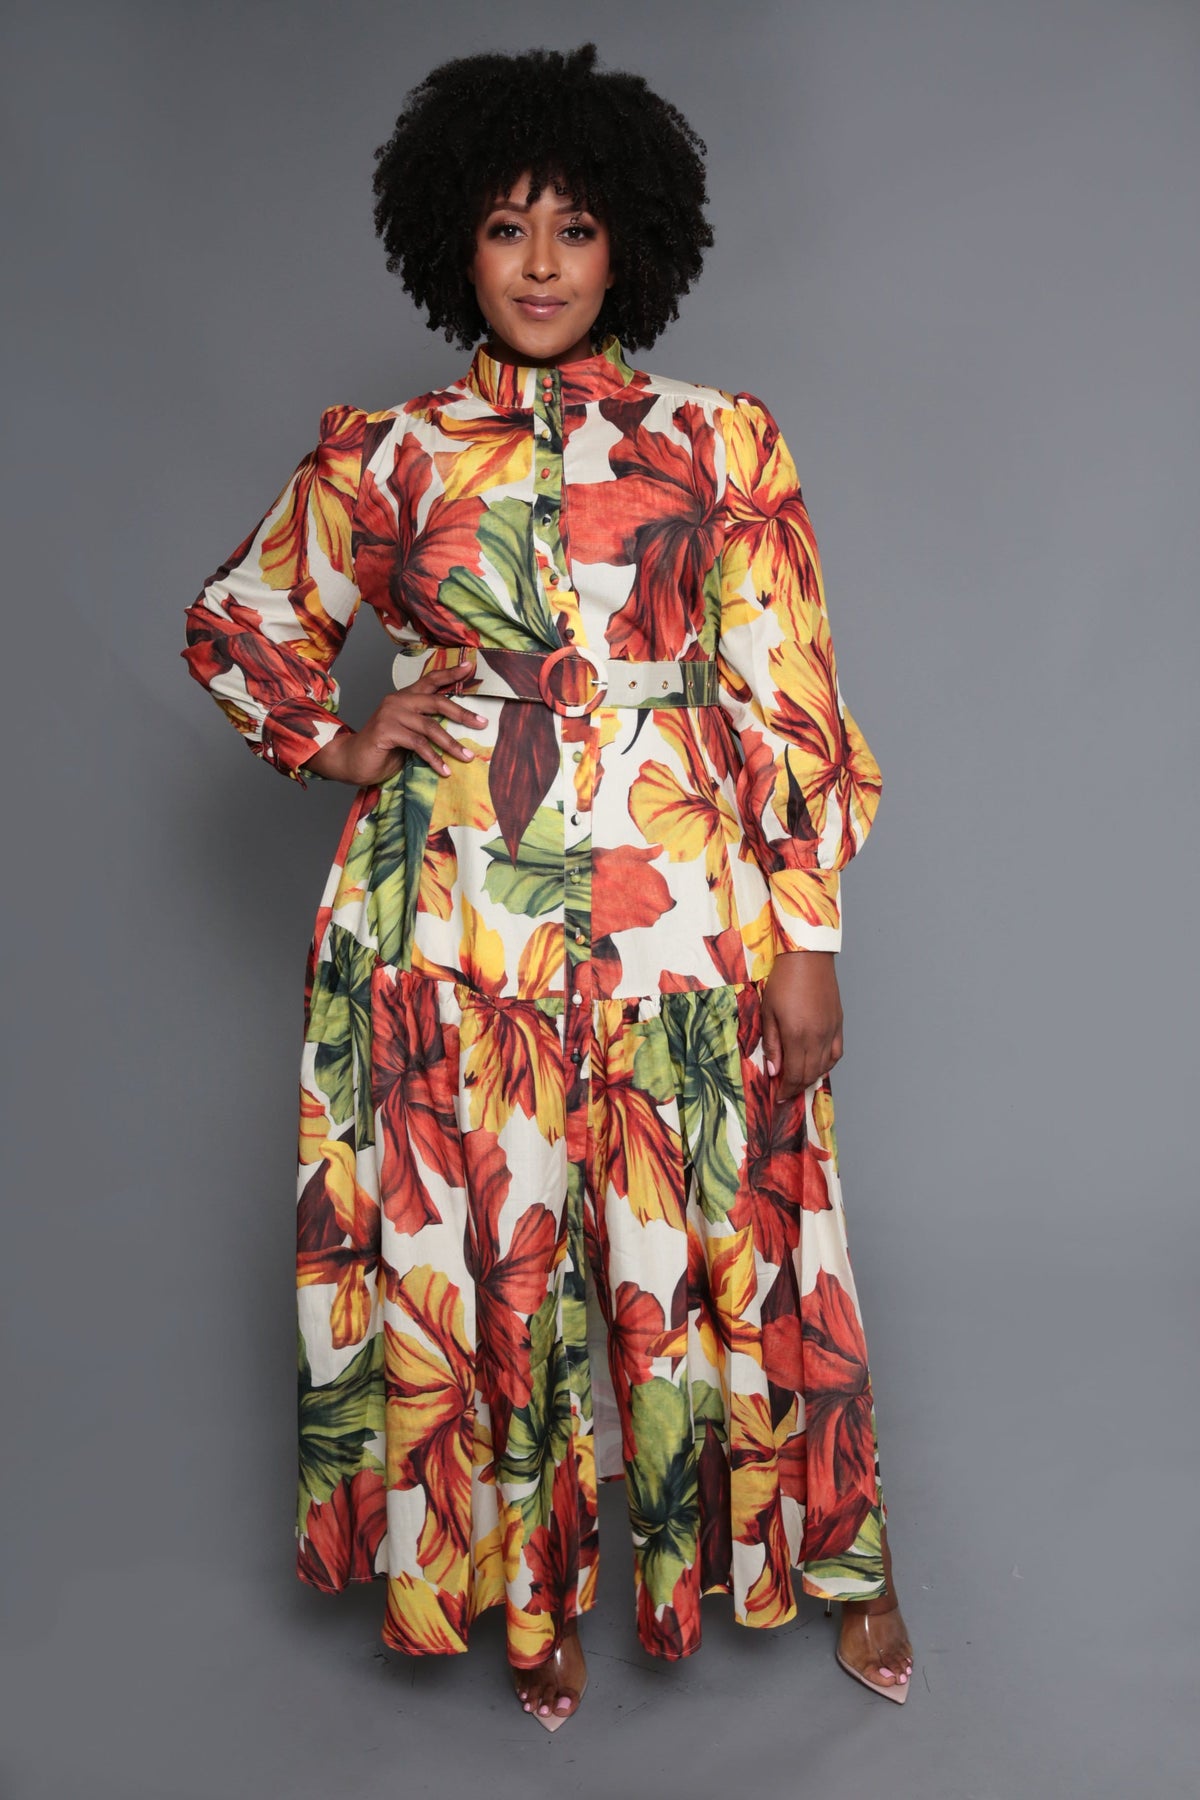 Fall Leaf Print Maxi Dress (Small to 3XL)